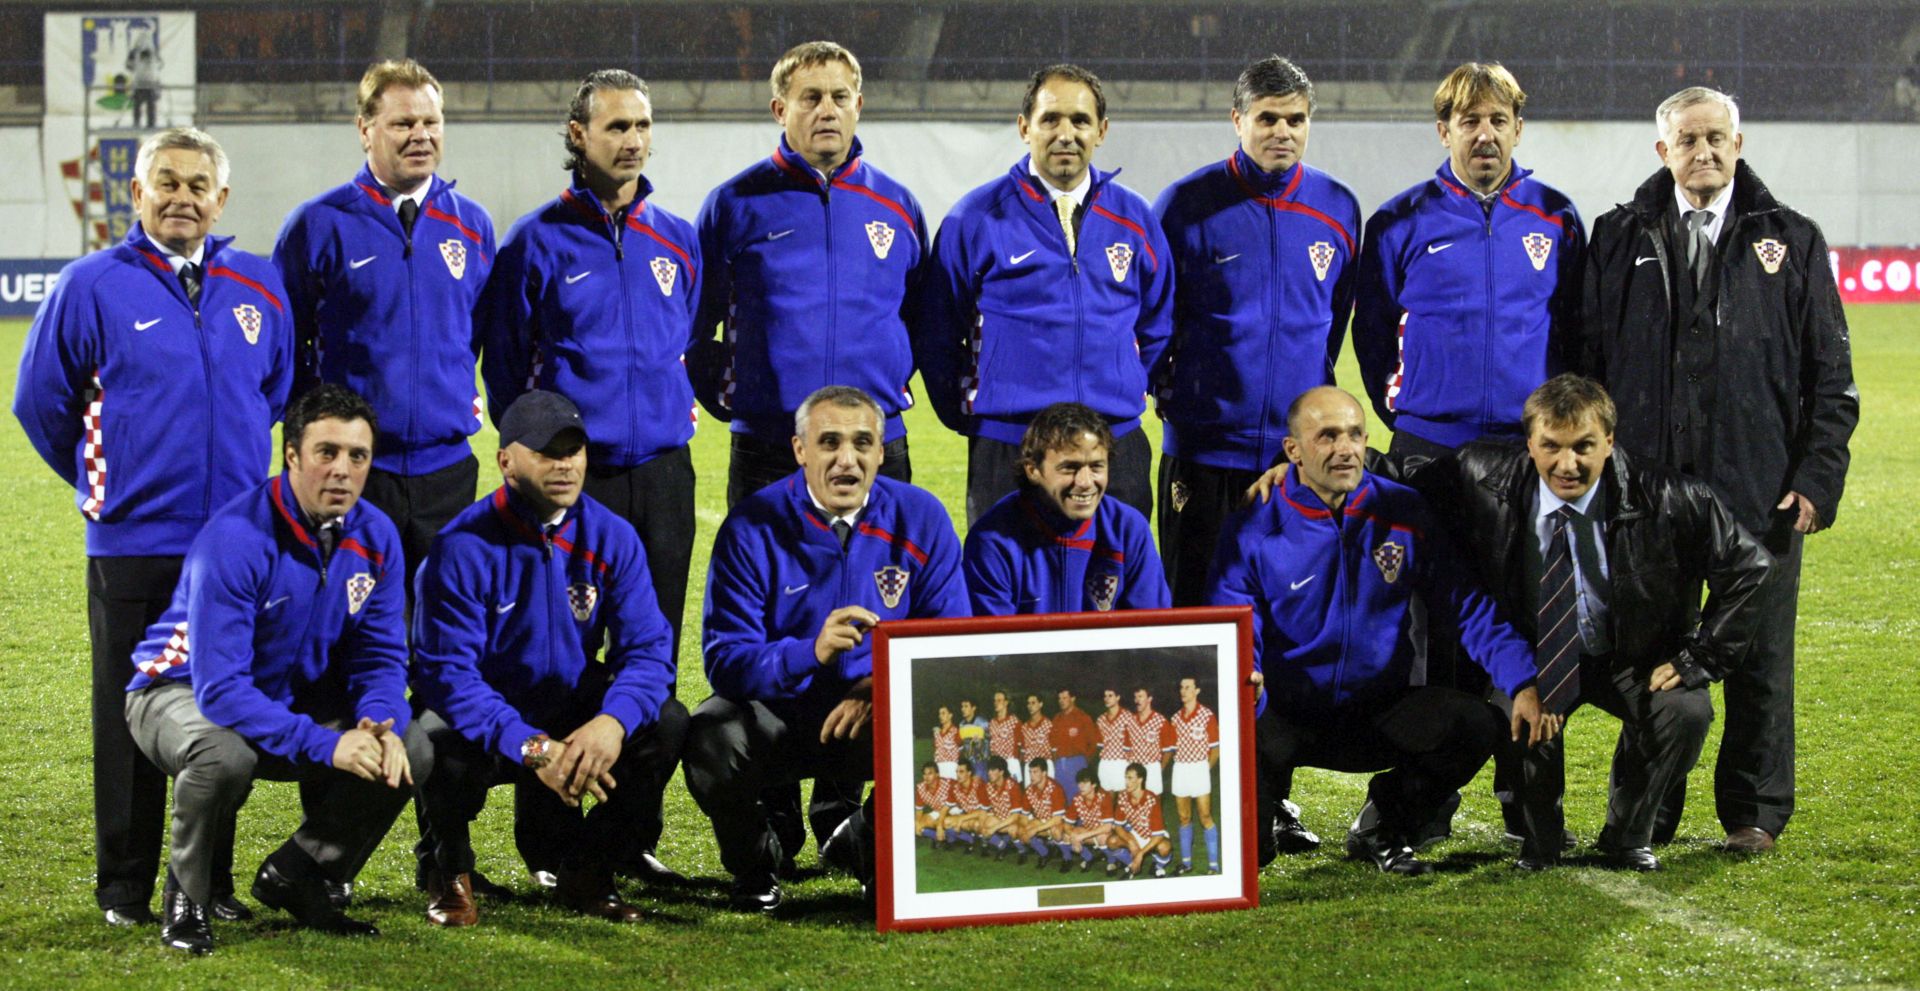 Zagreb, 17.11.2010 - Uoèi dananje utakmice Hrvatska - Malta odrana je slubena proslava 20. obljetnice prve utakmice hrvatske reprezentacije. U zagrebaèkom hotelu Sheraton okupilo se 12 ivuæih igraèa koji su 17. listopada 1990. godine na stadionu Maksimir nastupili za Hrvatsku u susretu protiv SAD. Nakon zajednièkog ruèka i kratkog druenja igraèi kao i èlanovi struènog stoera su se uputili prema stadionu gdje su ih pozdravili gledatelji pola sata prije poèetka utakmice.  Pred navijaèe su istrèali Marko Mlinariæ, Aljoa Asanoviæ, Tonèi Gabriæ, Draen Ladiæ, Vlado Kasalo, Mladen Mladenoviæ, Zoran Vuliæ, Ivan Cvjetkoviæ, Kujtim Shala, Gregor idan, Drago Èeliæ i Saa Peron.
foto FaH/ Dario GRZELJ/ ua